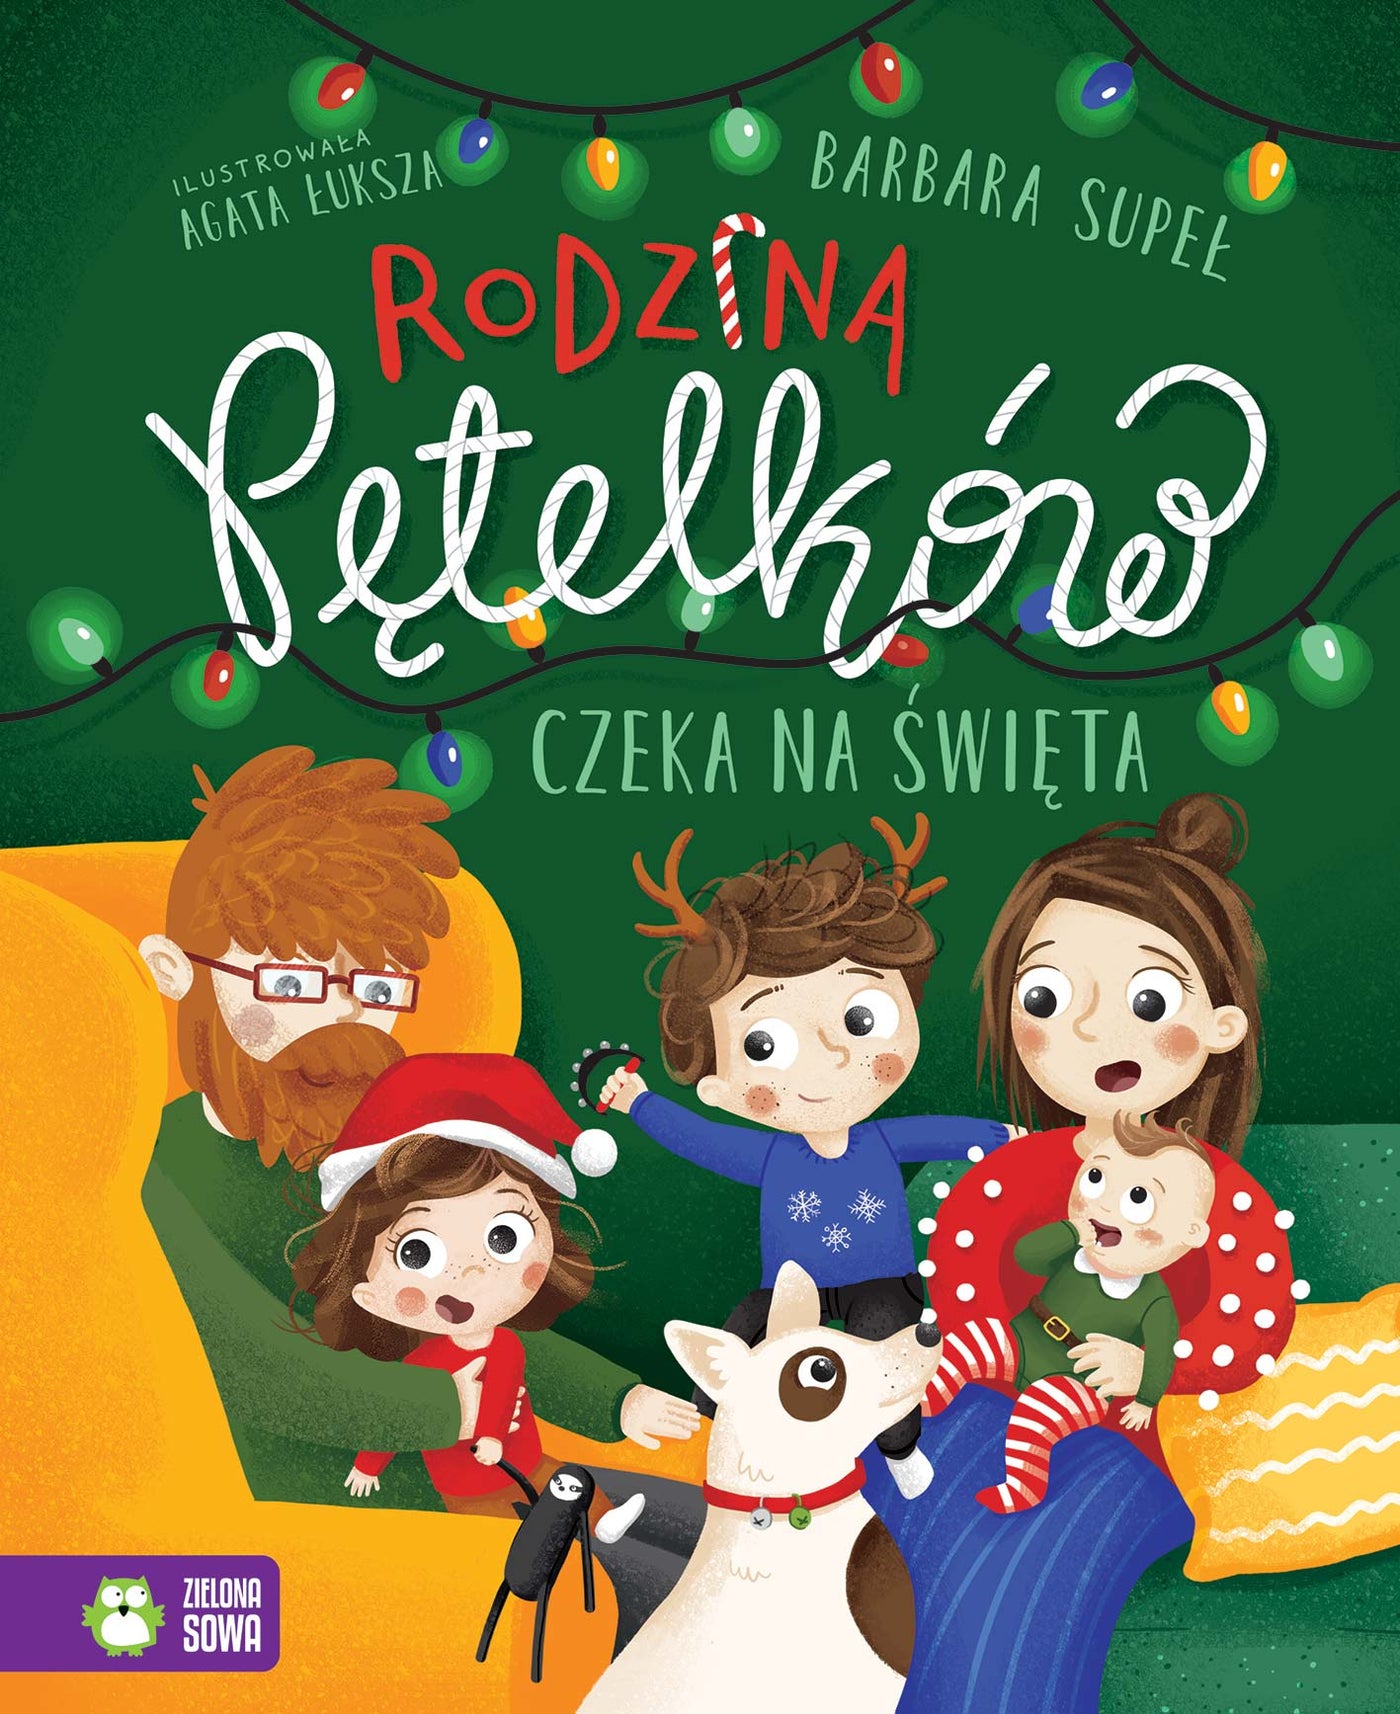 Zielona sowa Książka dla dzieci Rodzina Pętelków czeka na święta